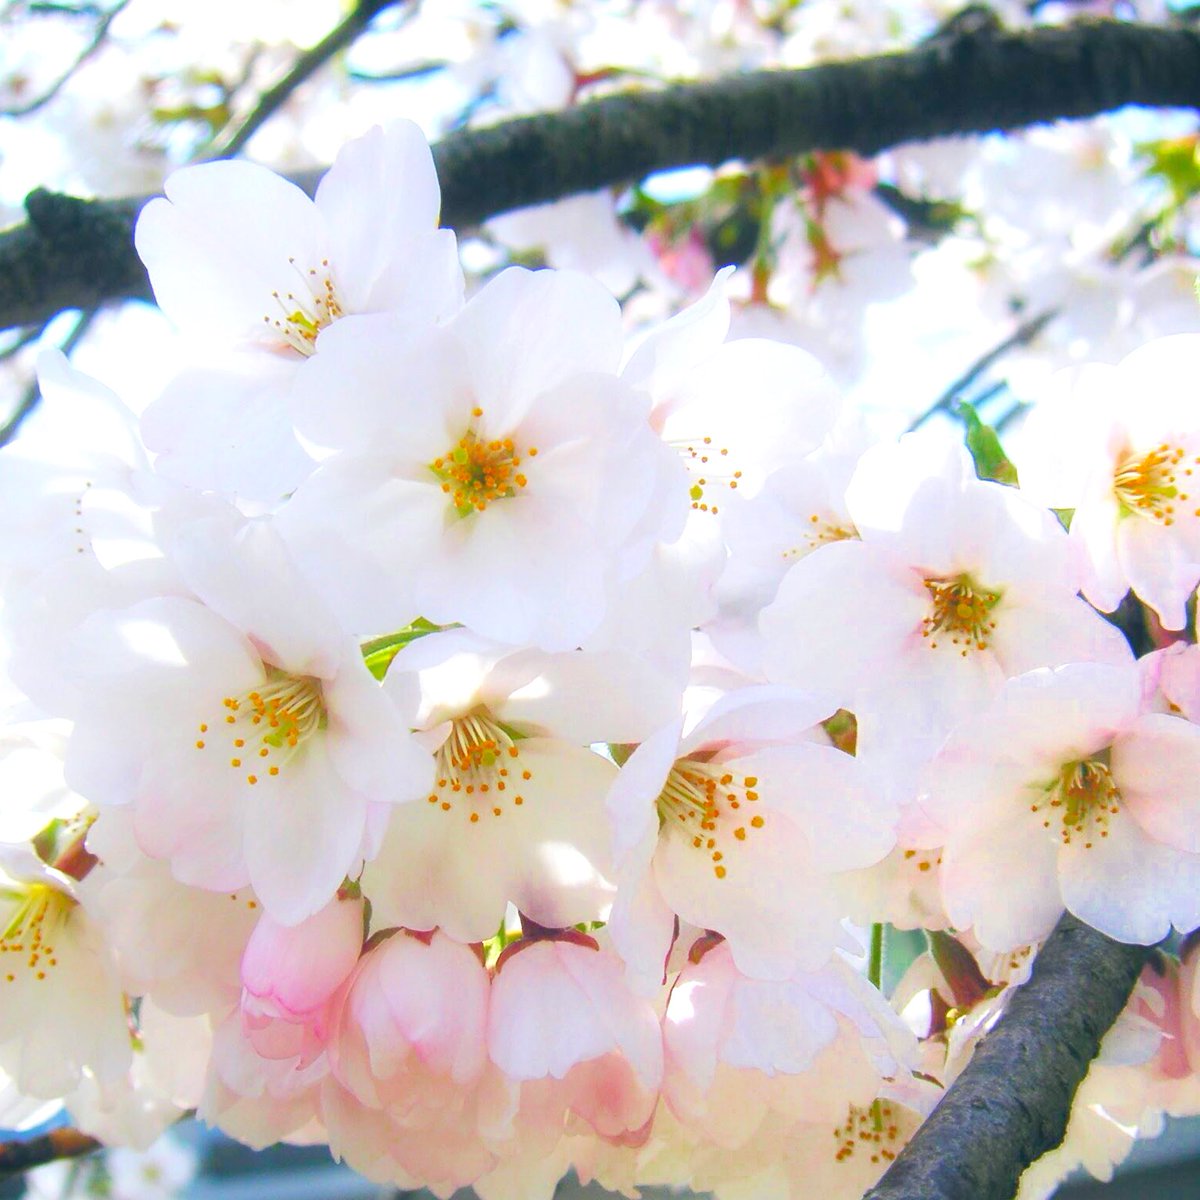 猫の肉球の中に桜の花びら #さくらの日 #桜の日